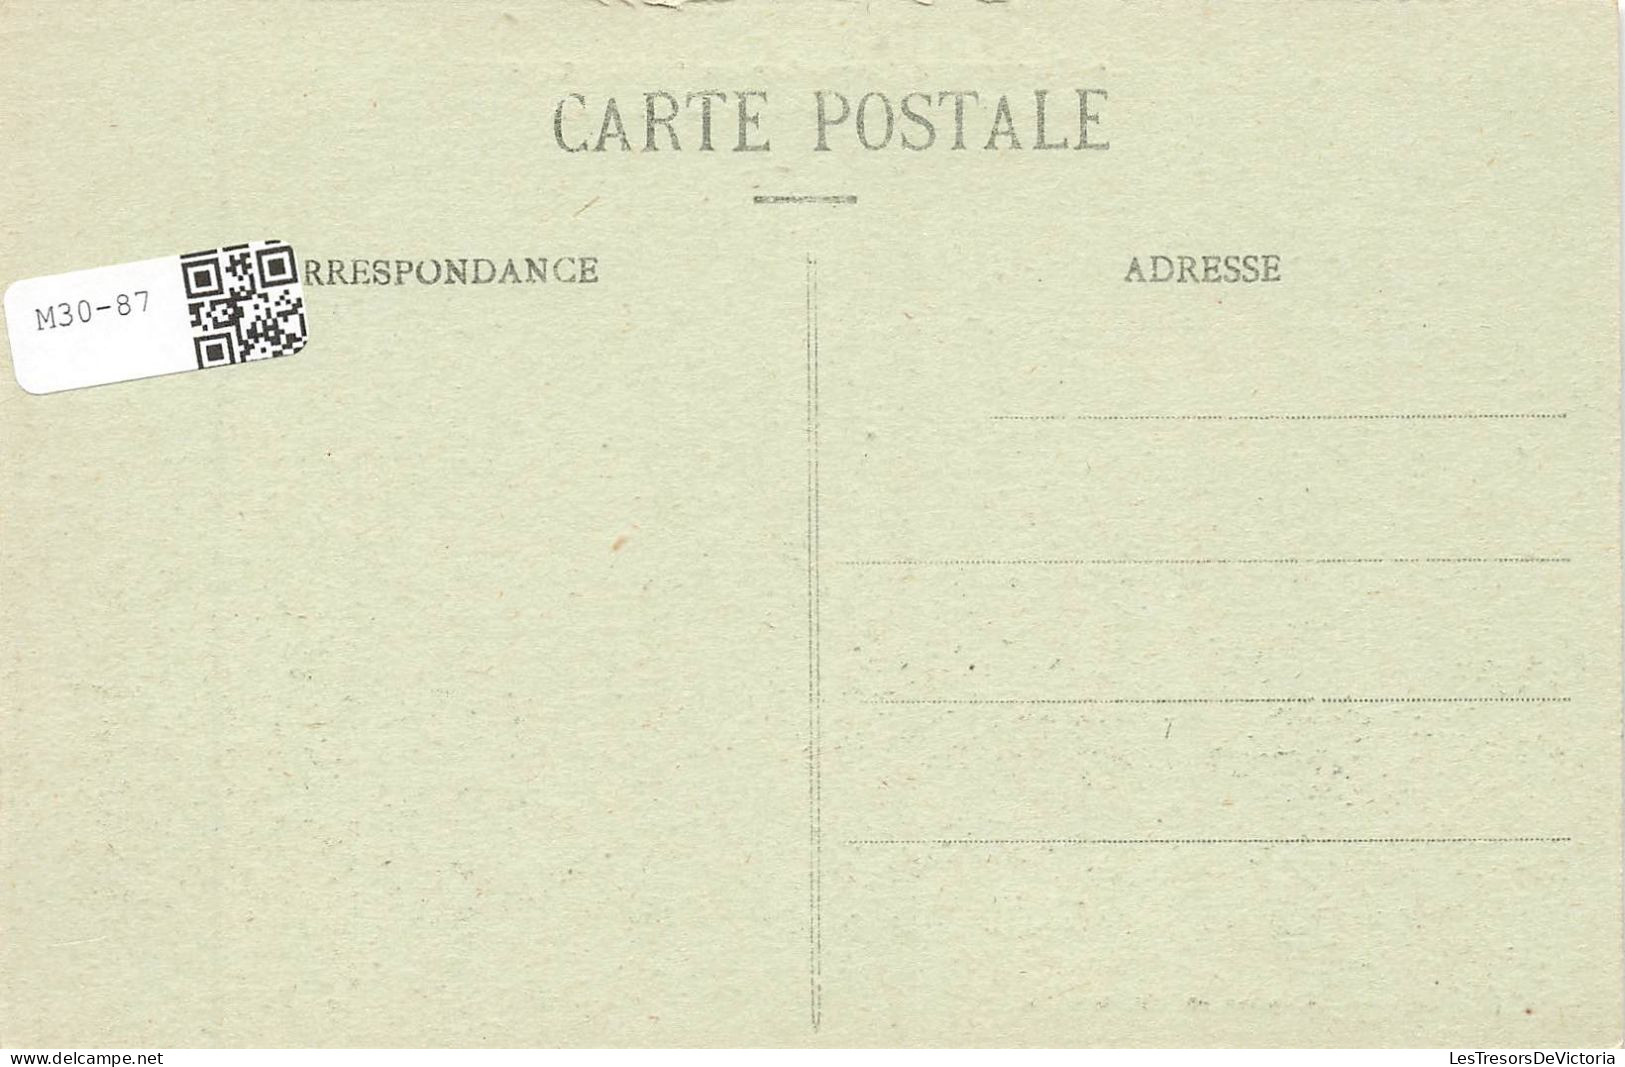 FRANCE - Gerbeviller - Bombardé Par Les Allemands - Carte Postale Ancienne - Gerbeviller